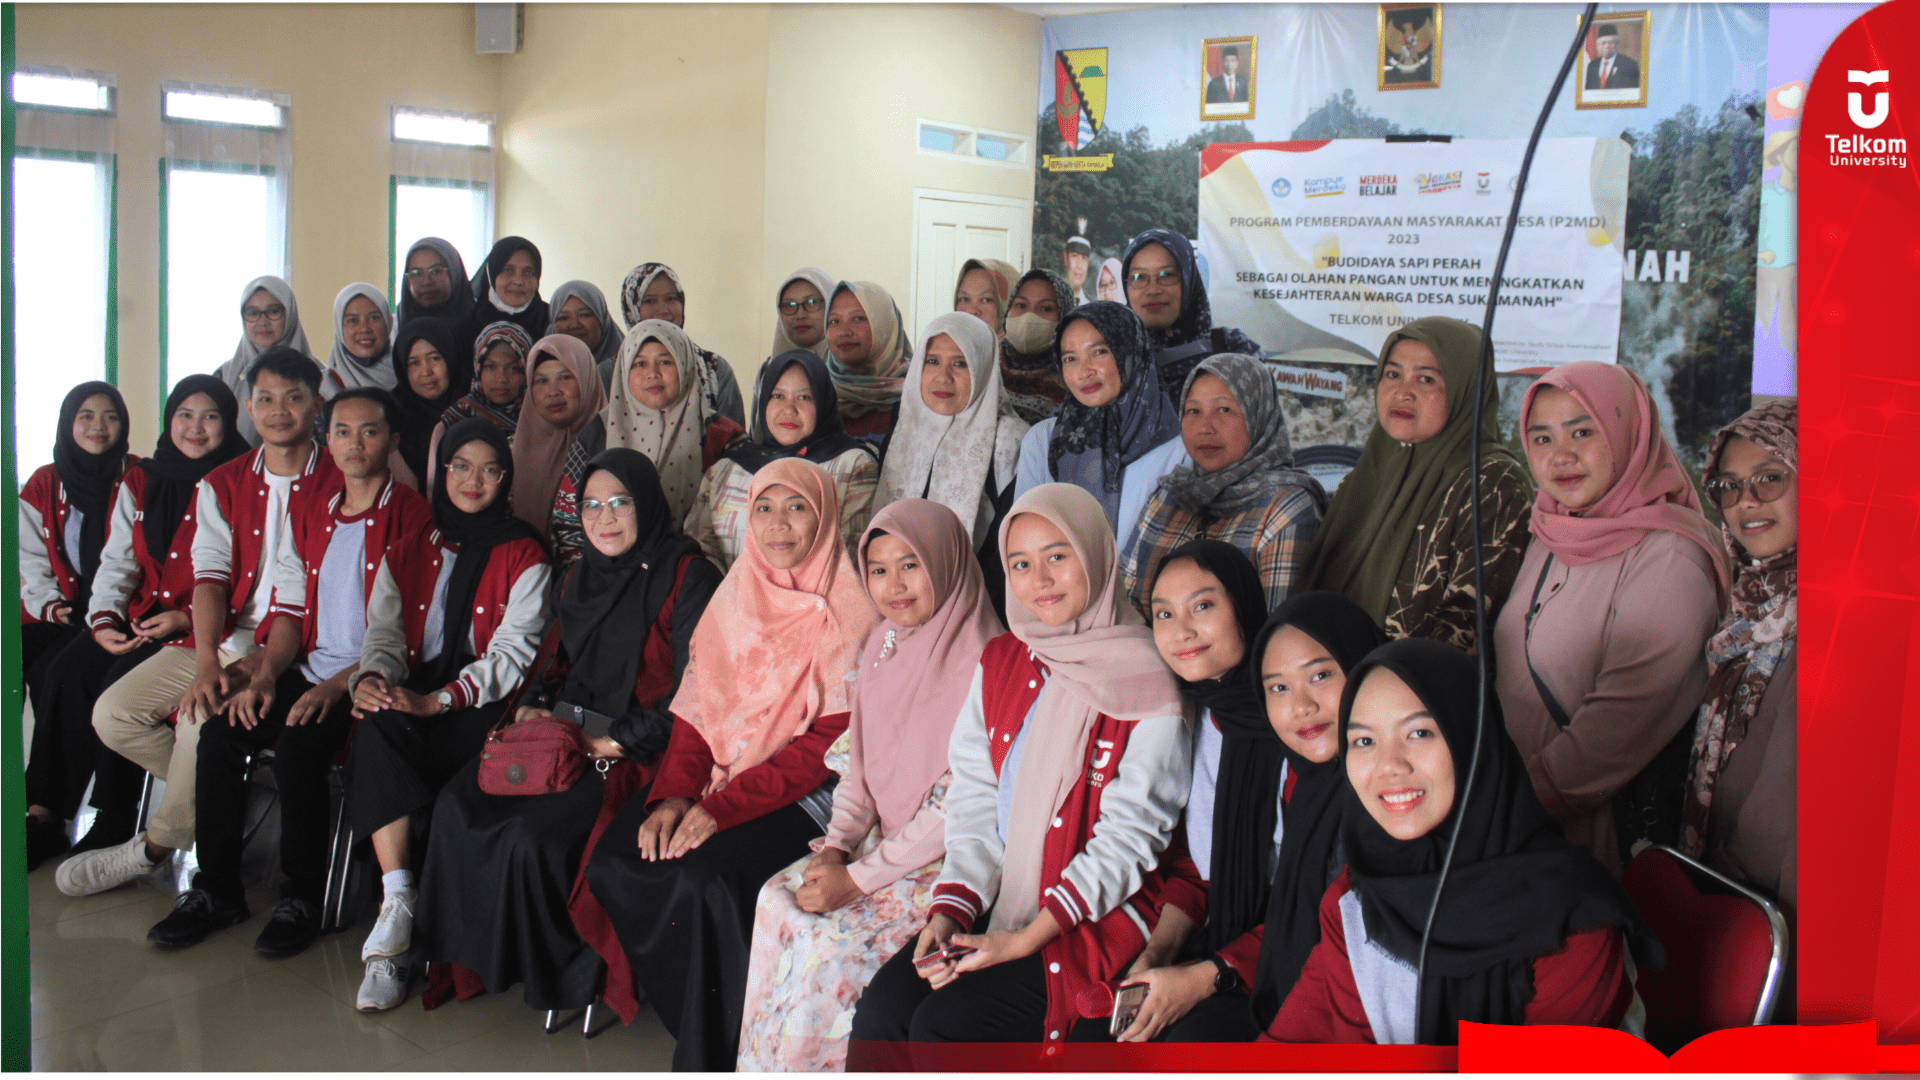 Budidaya Sapi Perah Sebagai Olahan Pangan, Ide Kreatif Mahasiswa Tel-U Bagi Desa Sukamanah, Bandung Selatan 